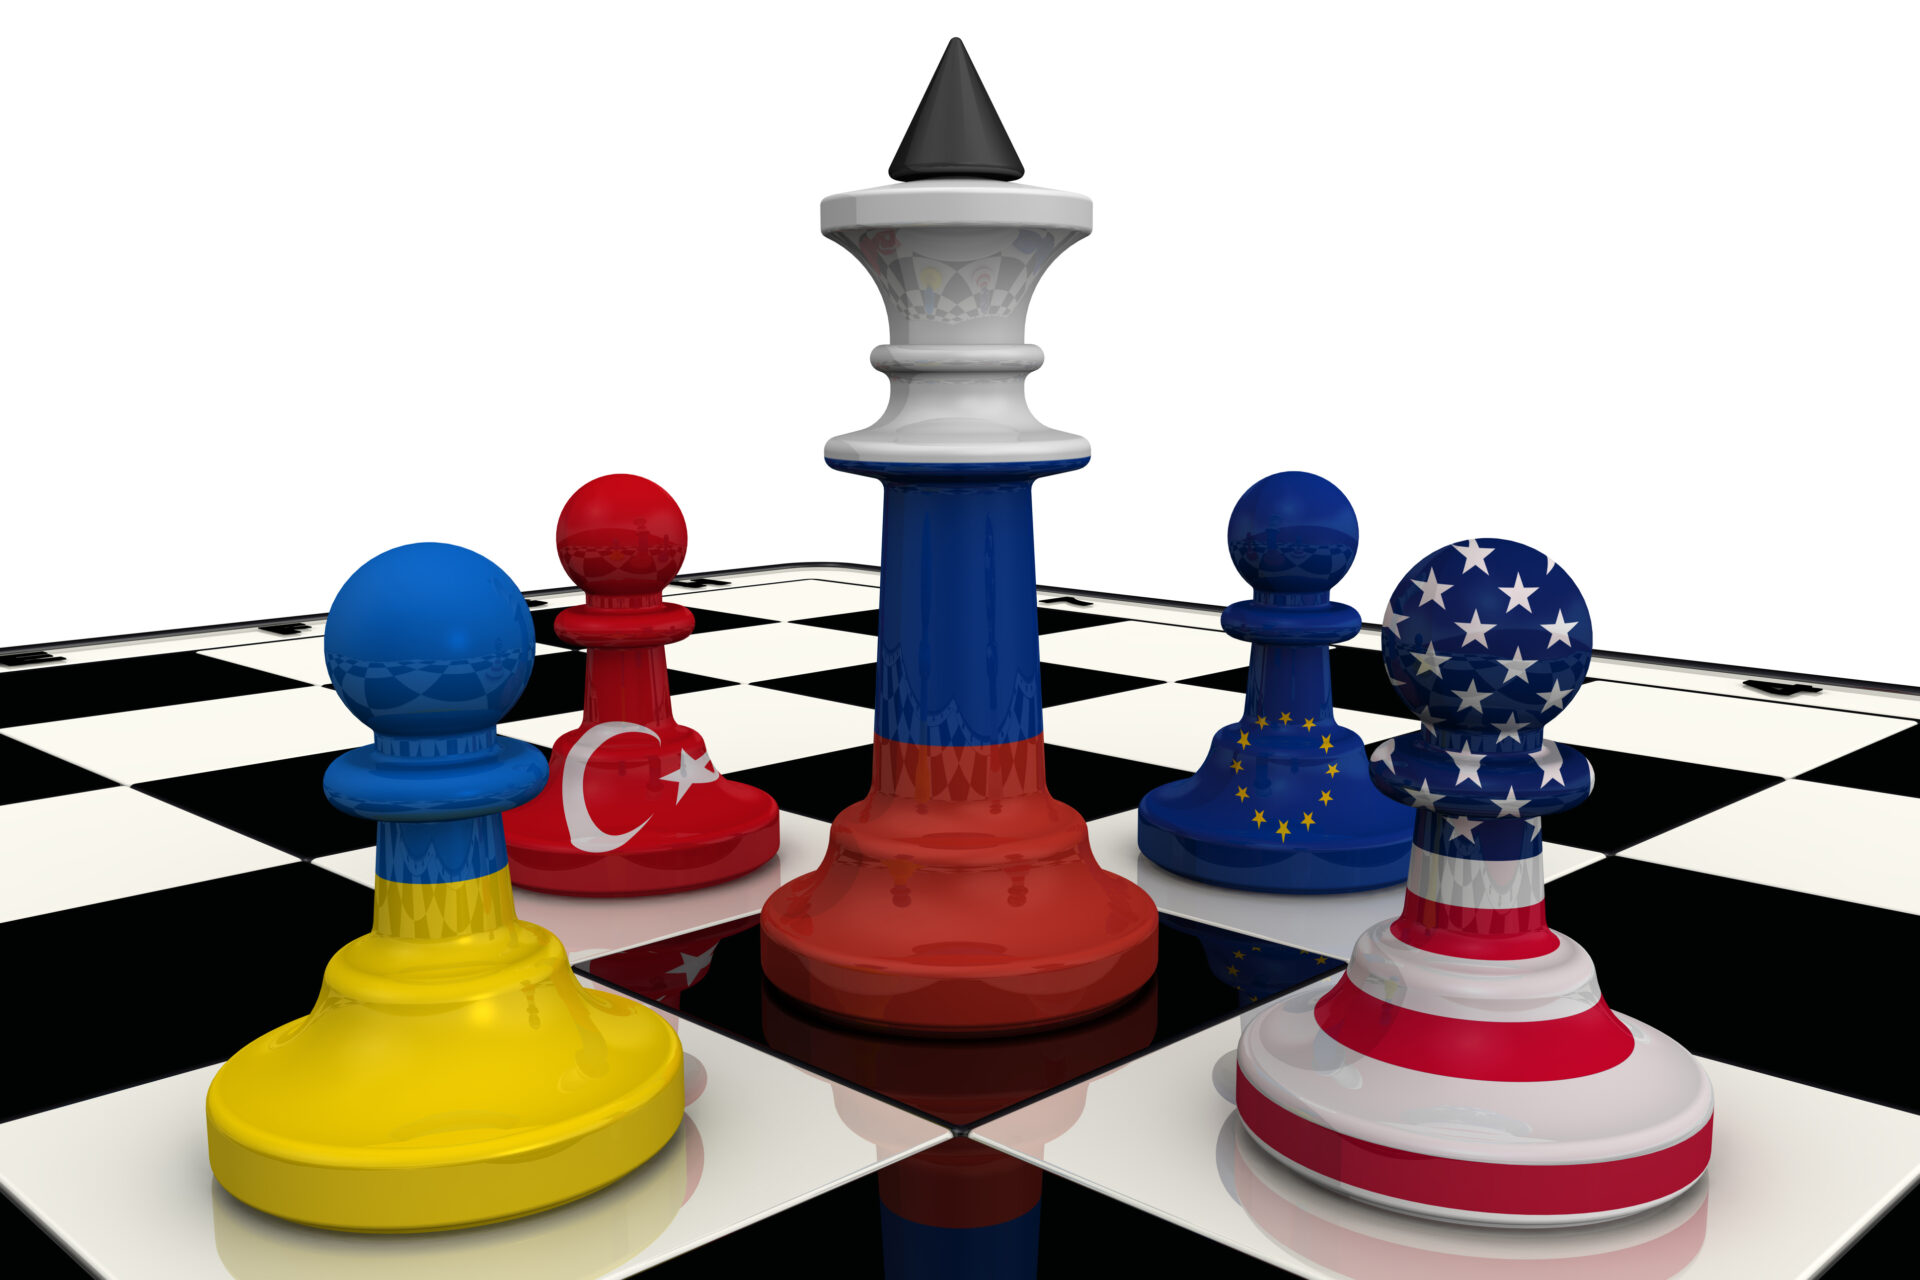 Venäjä, EU, Kiina, USA shakkilaudan nappuloina